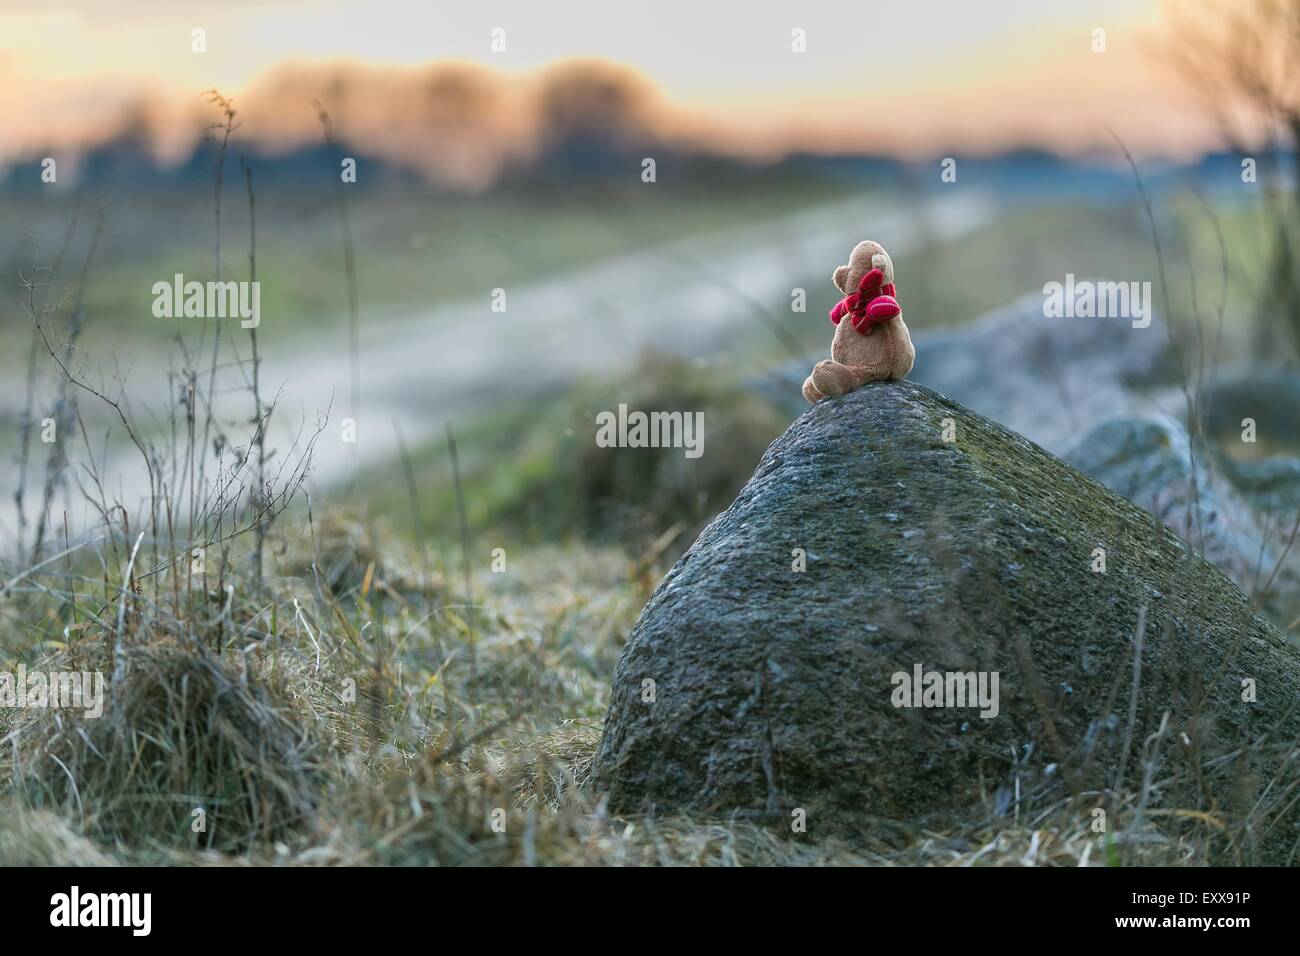 Piccolo orsacchiotto seduto sulla pietra in un paesaggio rurale al tramonto Foto Stock